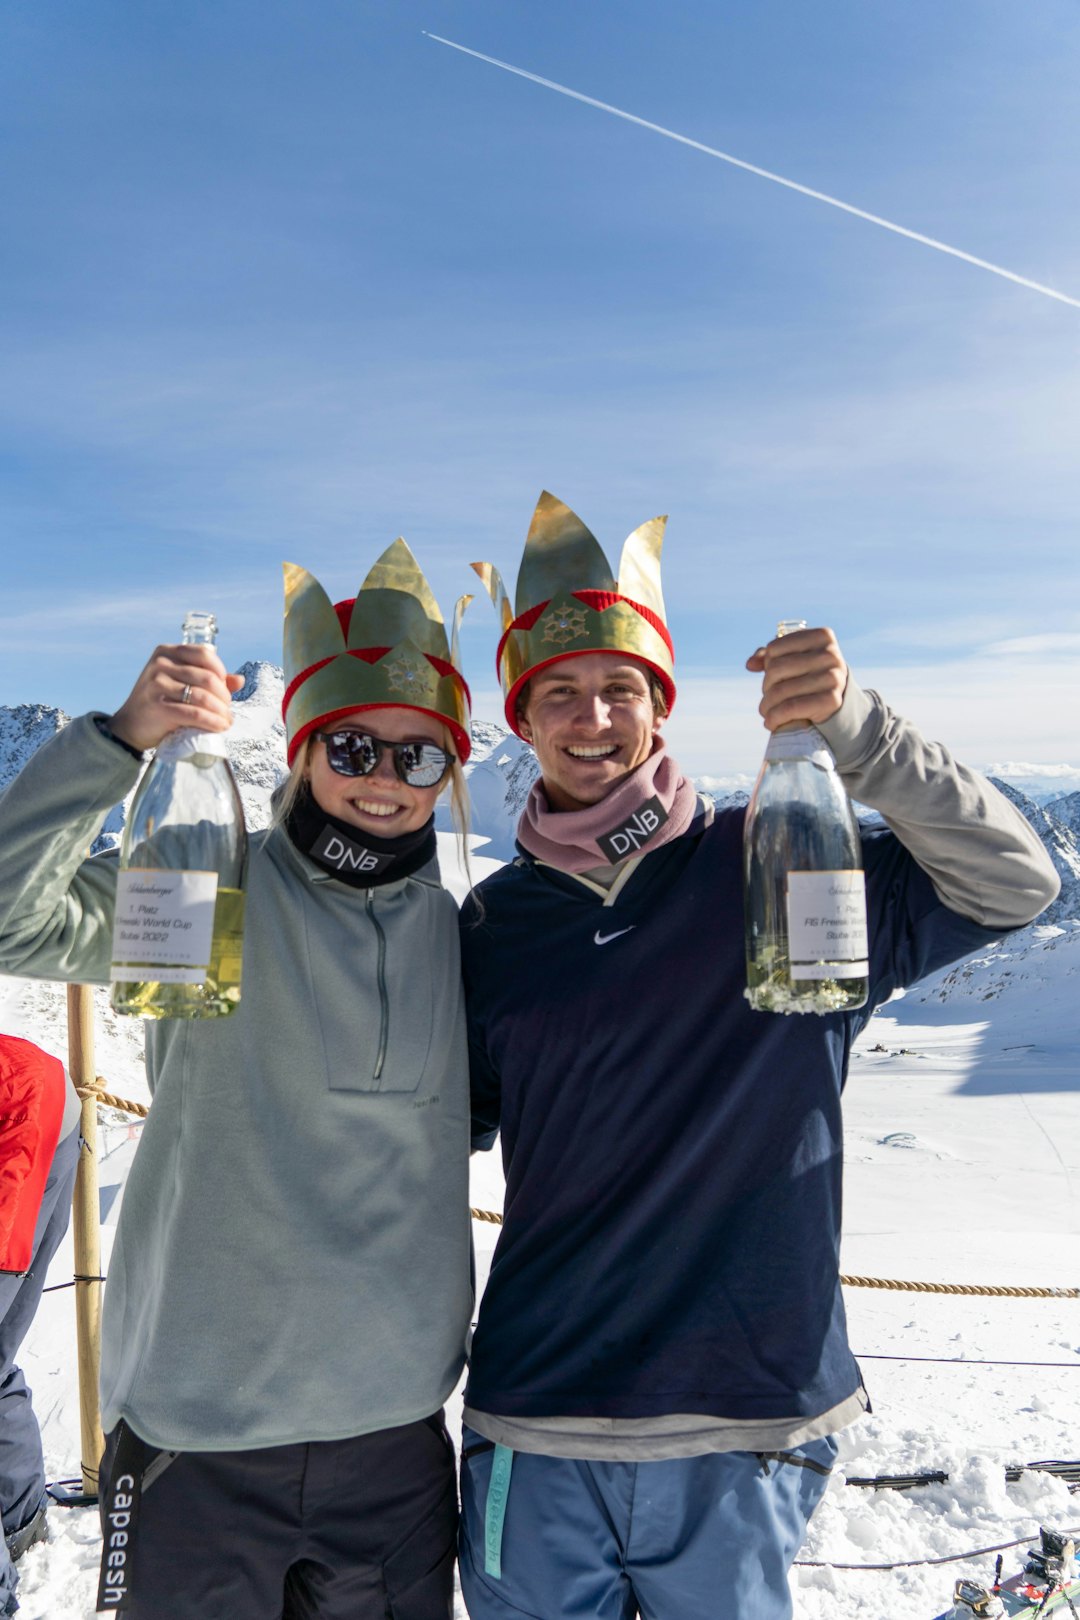 STUBAI-DOBBEL: Det ble dobbelt norsk i slopestyle i Stubai med Johanne Killi og Birk Ruud på toppen av hver sin pall. Foto: Christoffer Schach